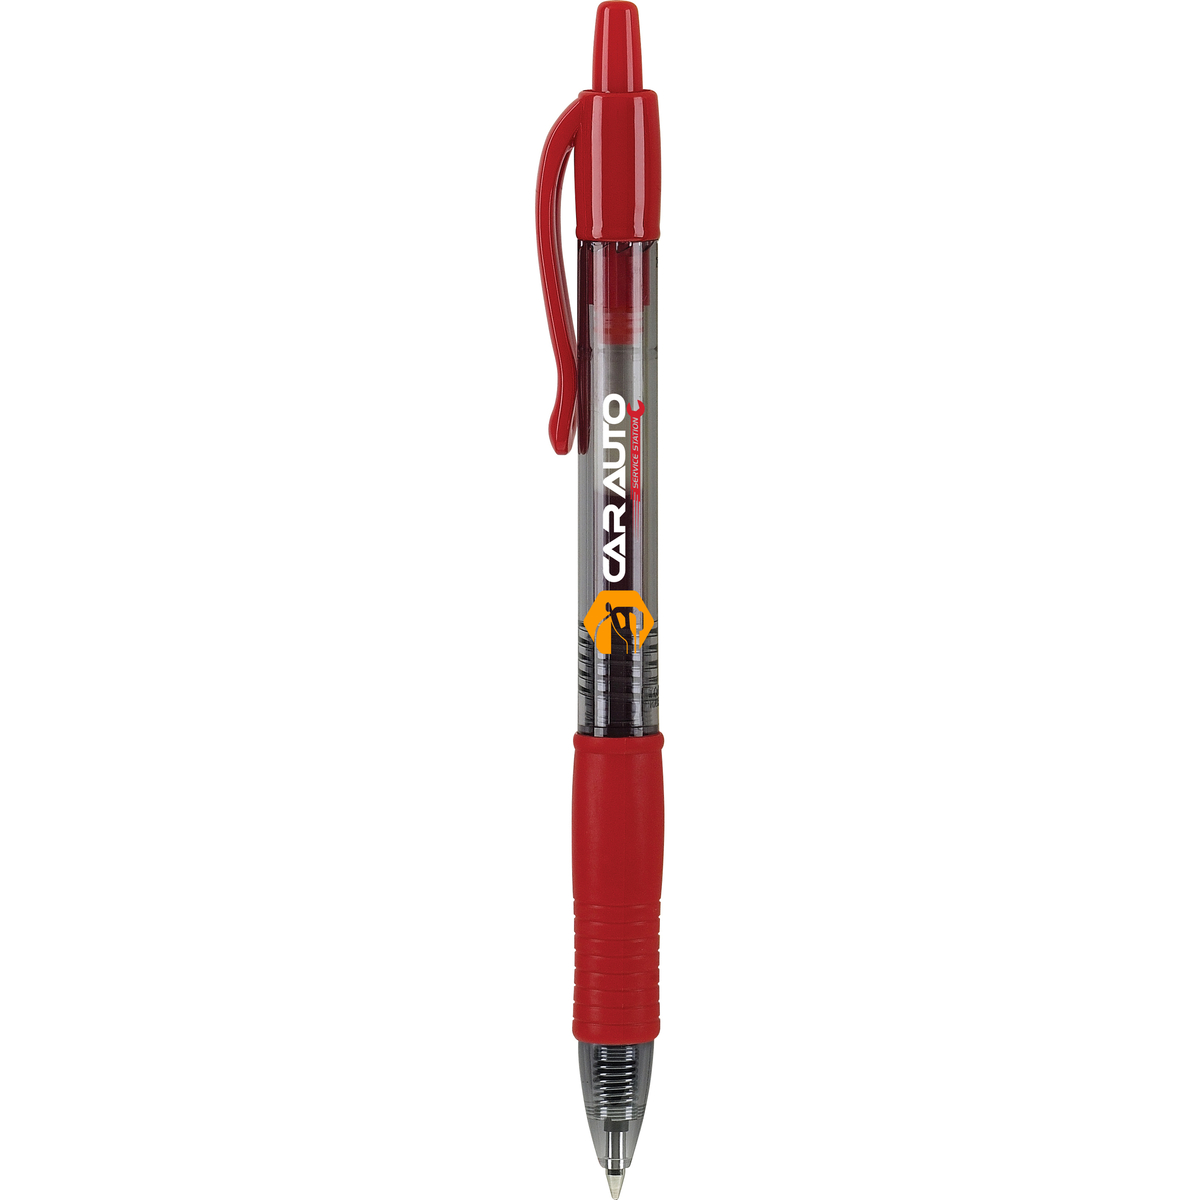 G2 31247 Roller Pen, Retractable, 0.7 mm Tip, Fine Tip, Burgundy Ink, Gel Ink, Contoured Grip - 2